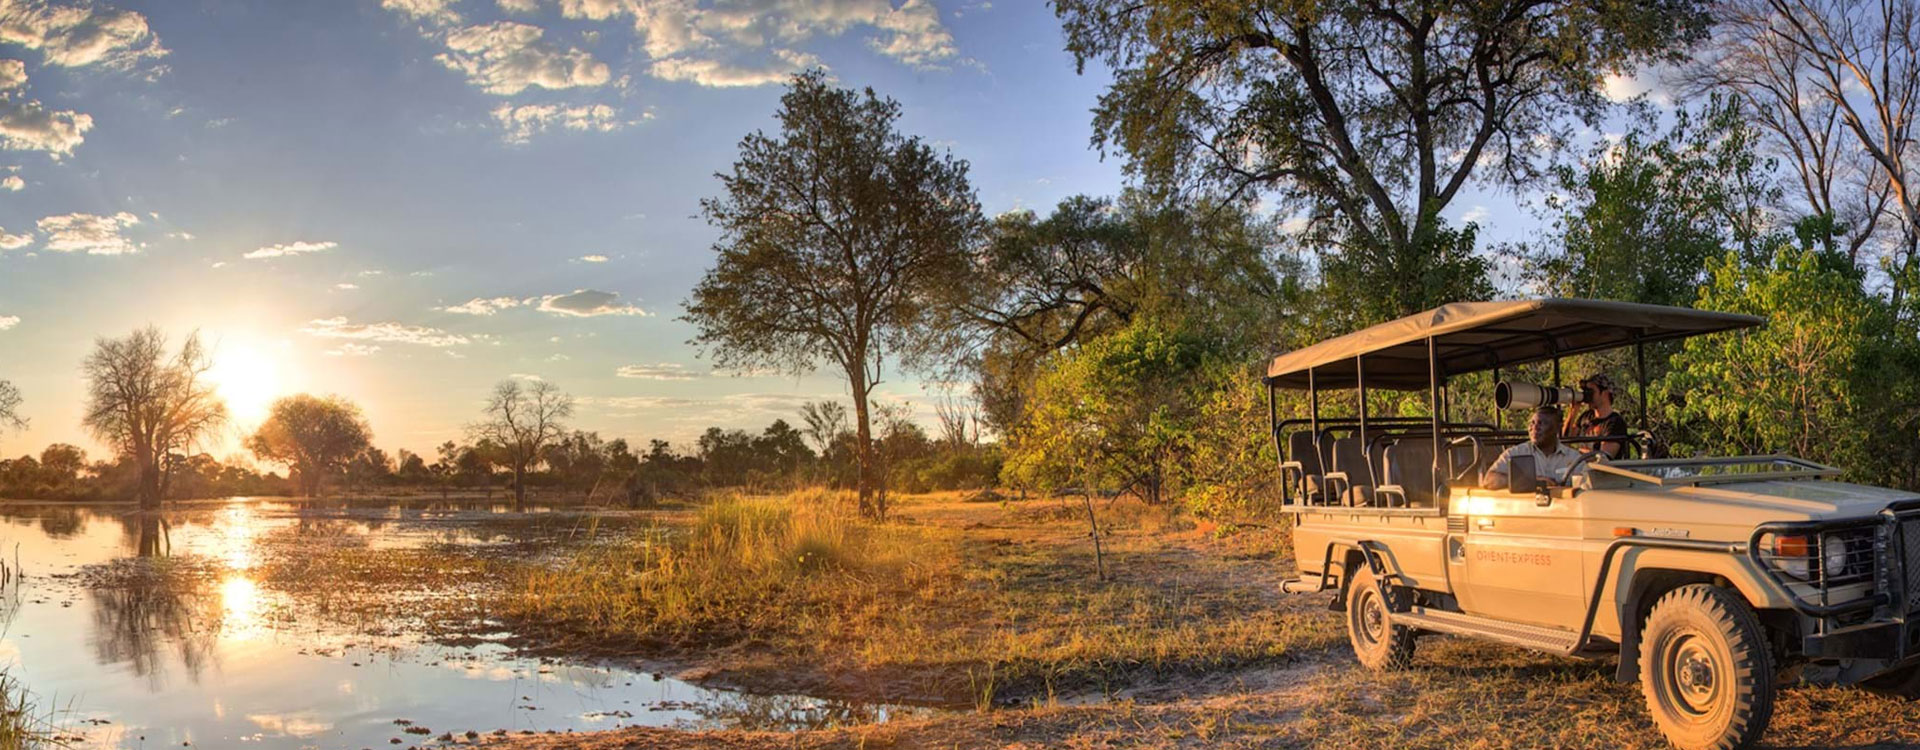 3 Days Rustic Kruger Park Family Self-Drive Safari